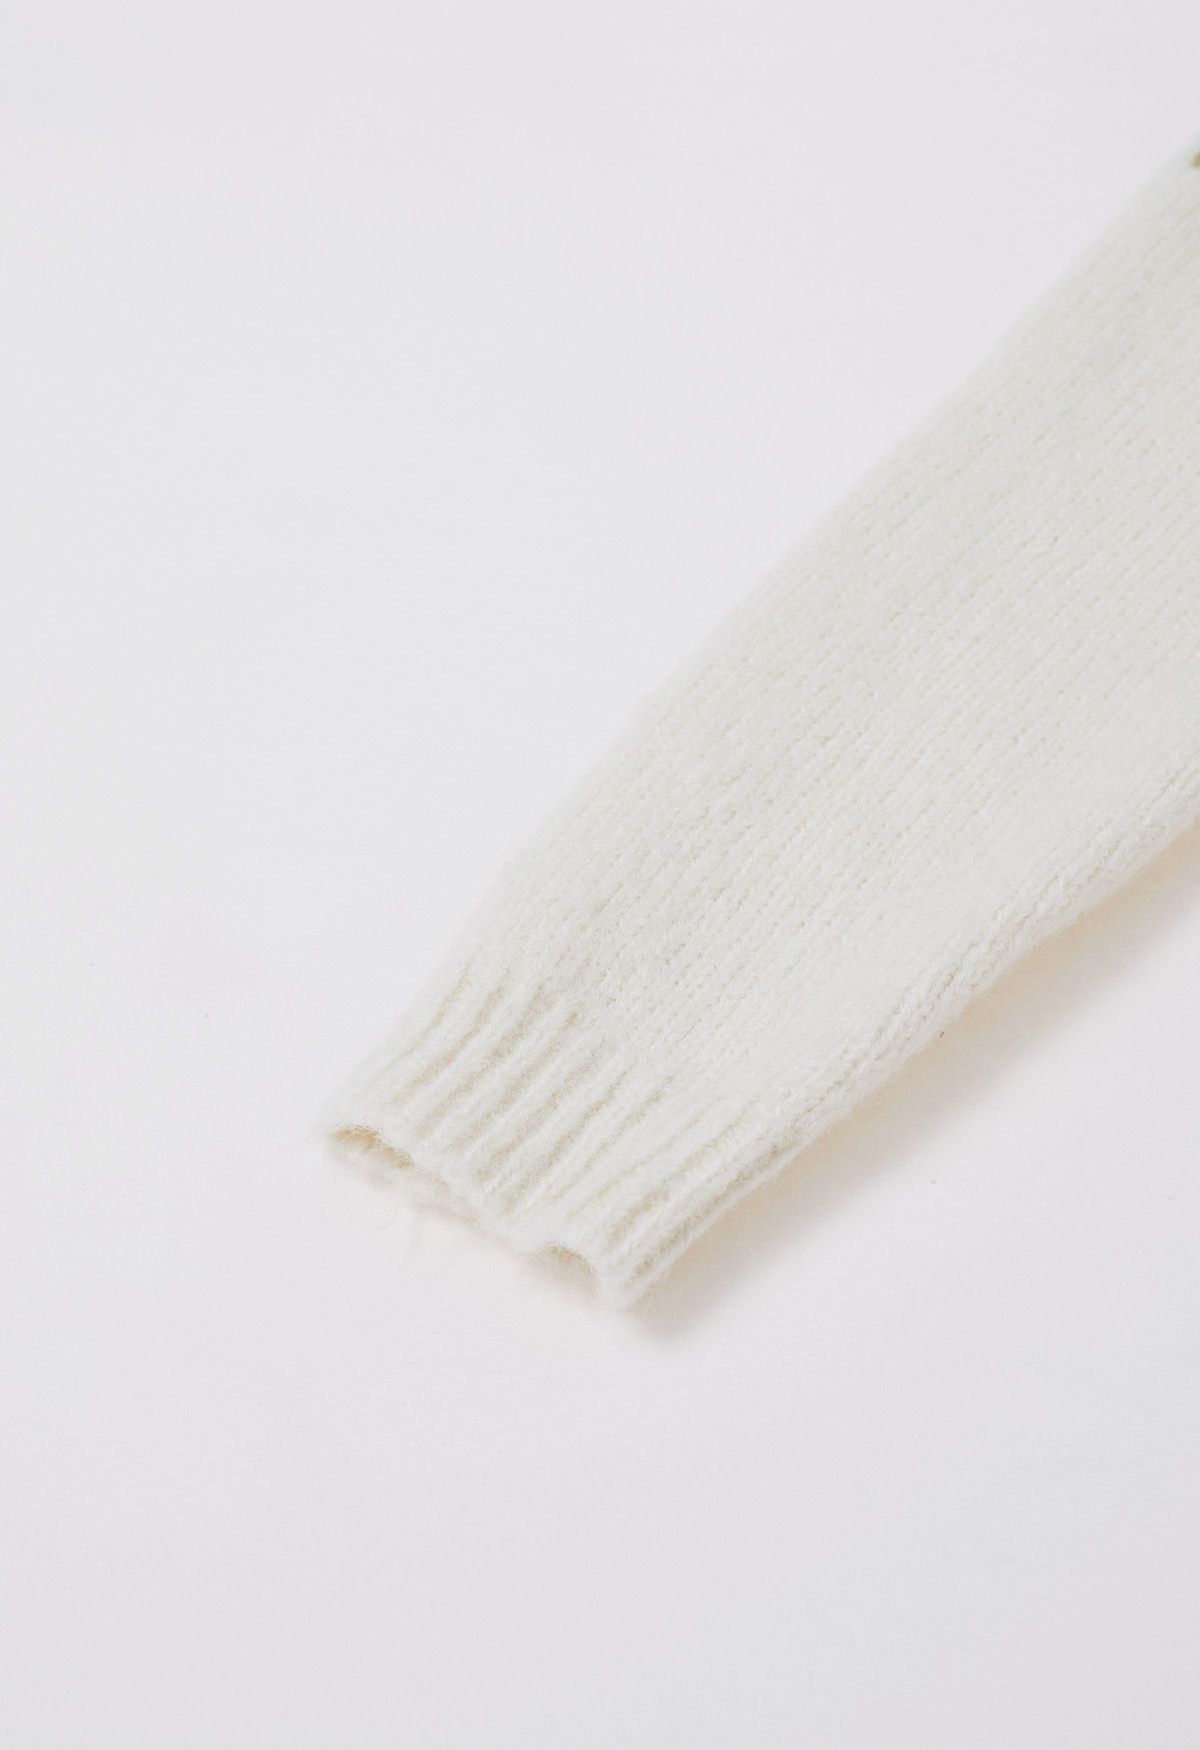 Newleaf Pattern Fuzzy Knit Sweater in Ivory